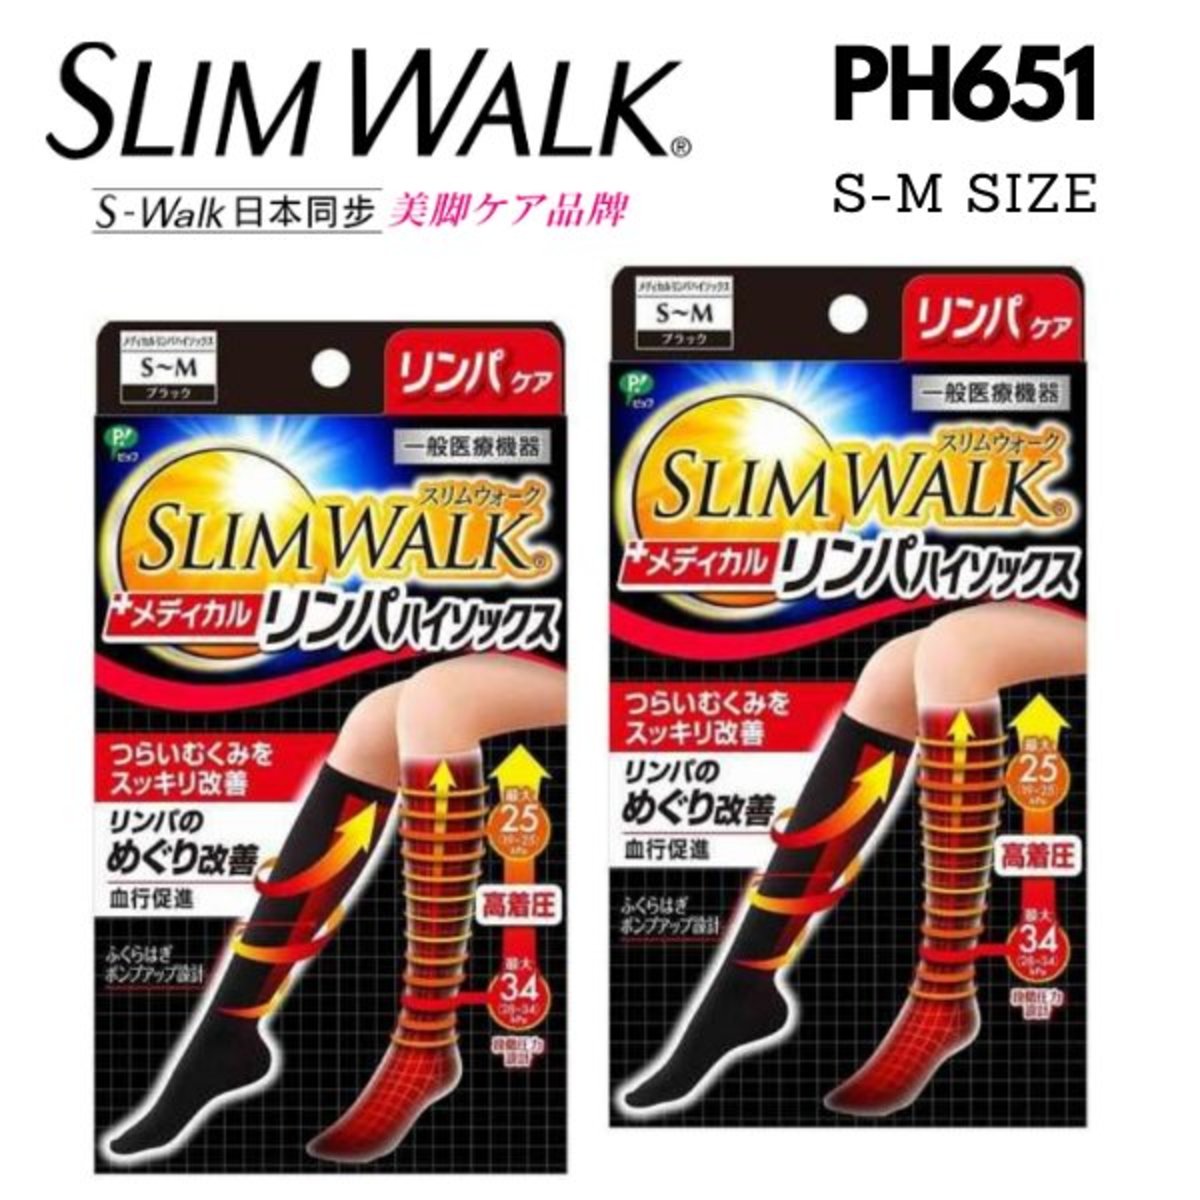 slimwalk壓力襪